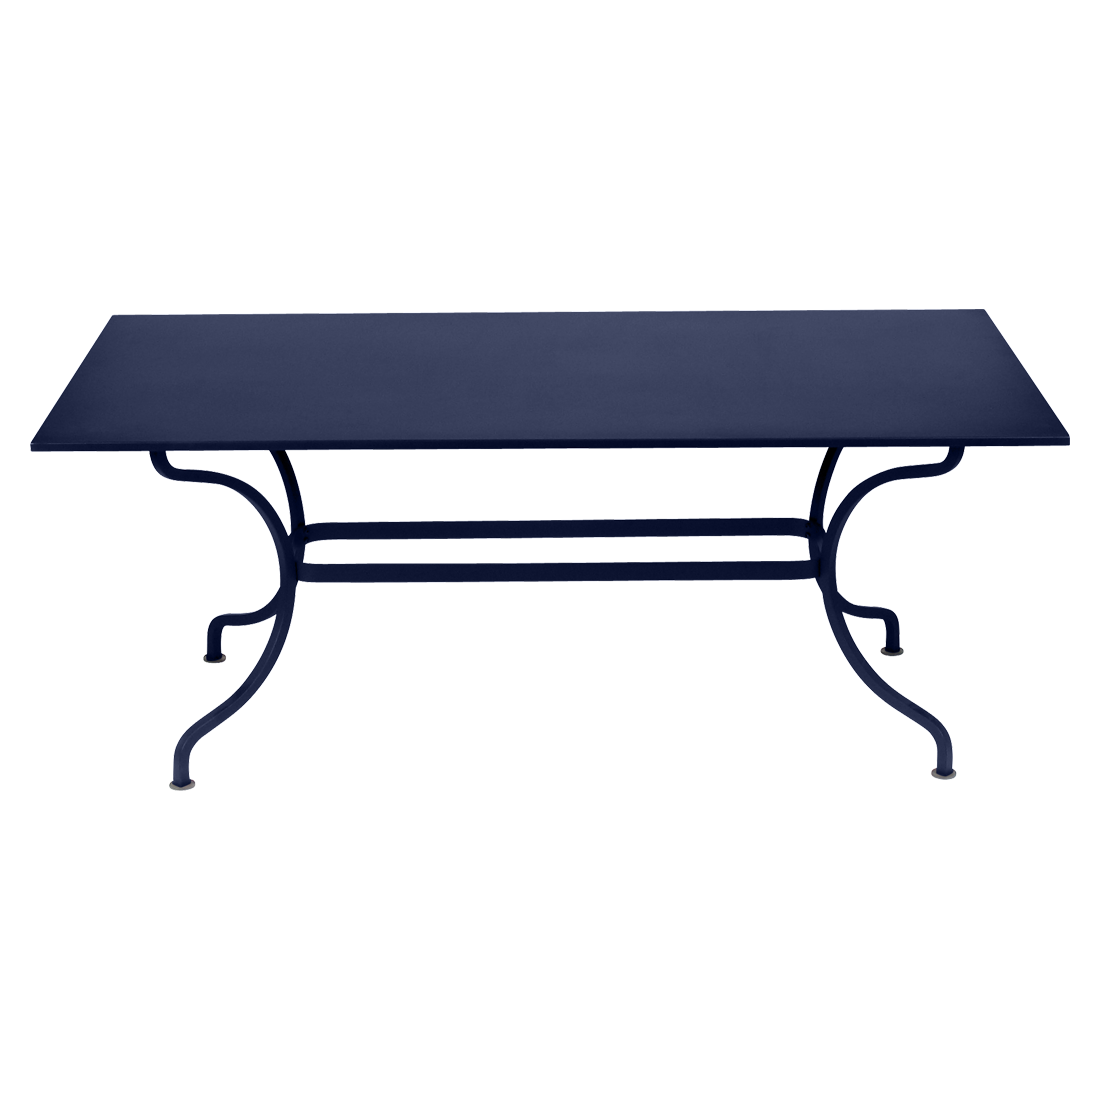 table de jardin, table metal, table rectangulaire, table 8 personnes, table bleu